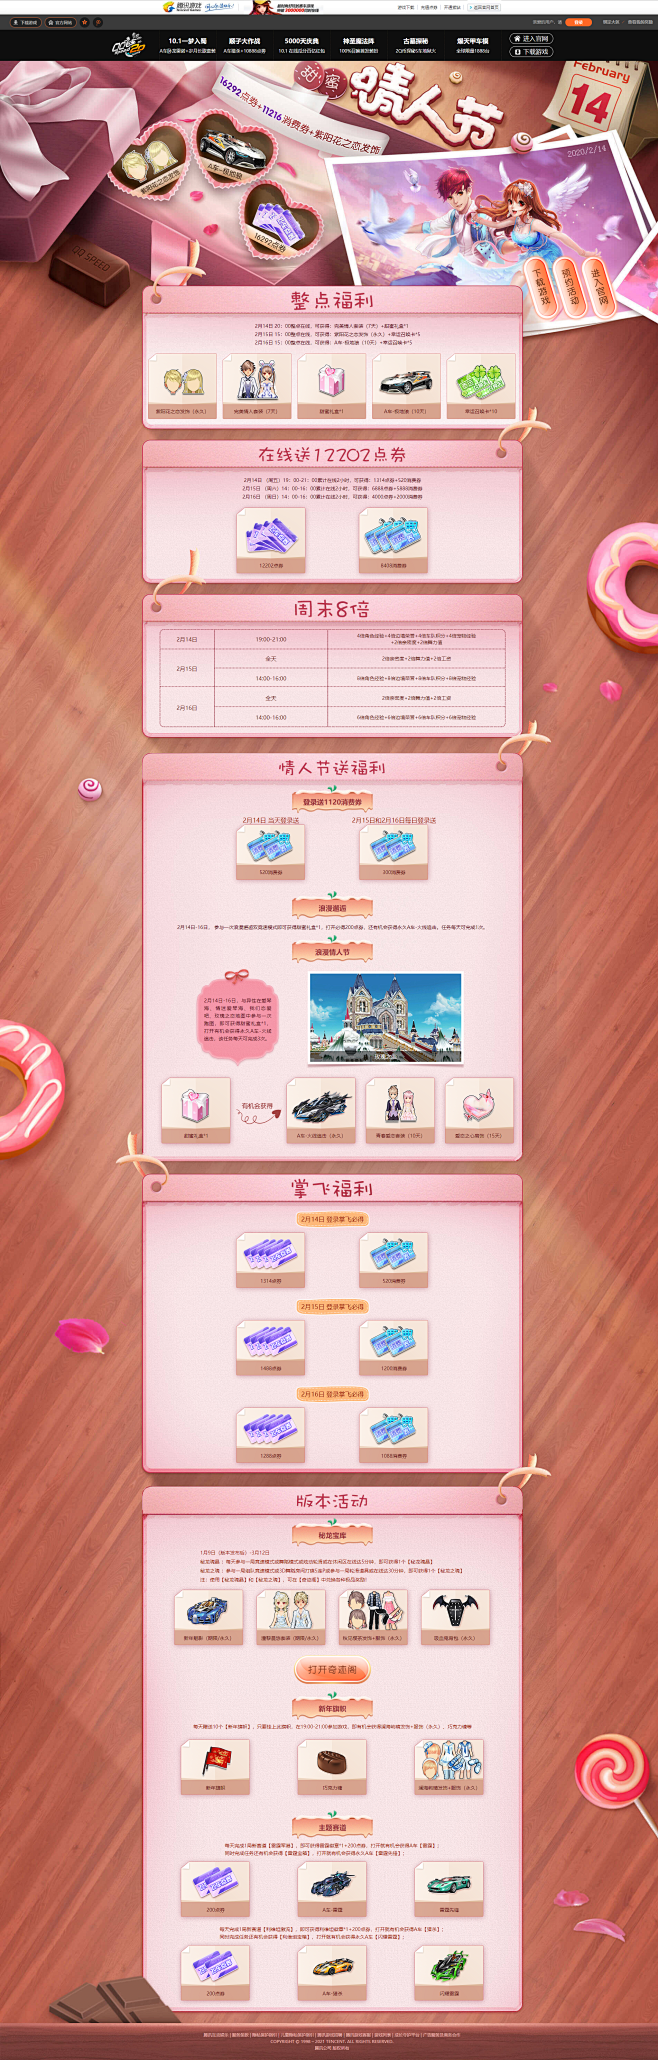 甜蜜情人节-QQ飞车官方网站-腾讯游戏-...